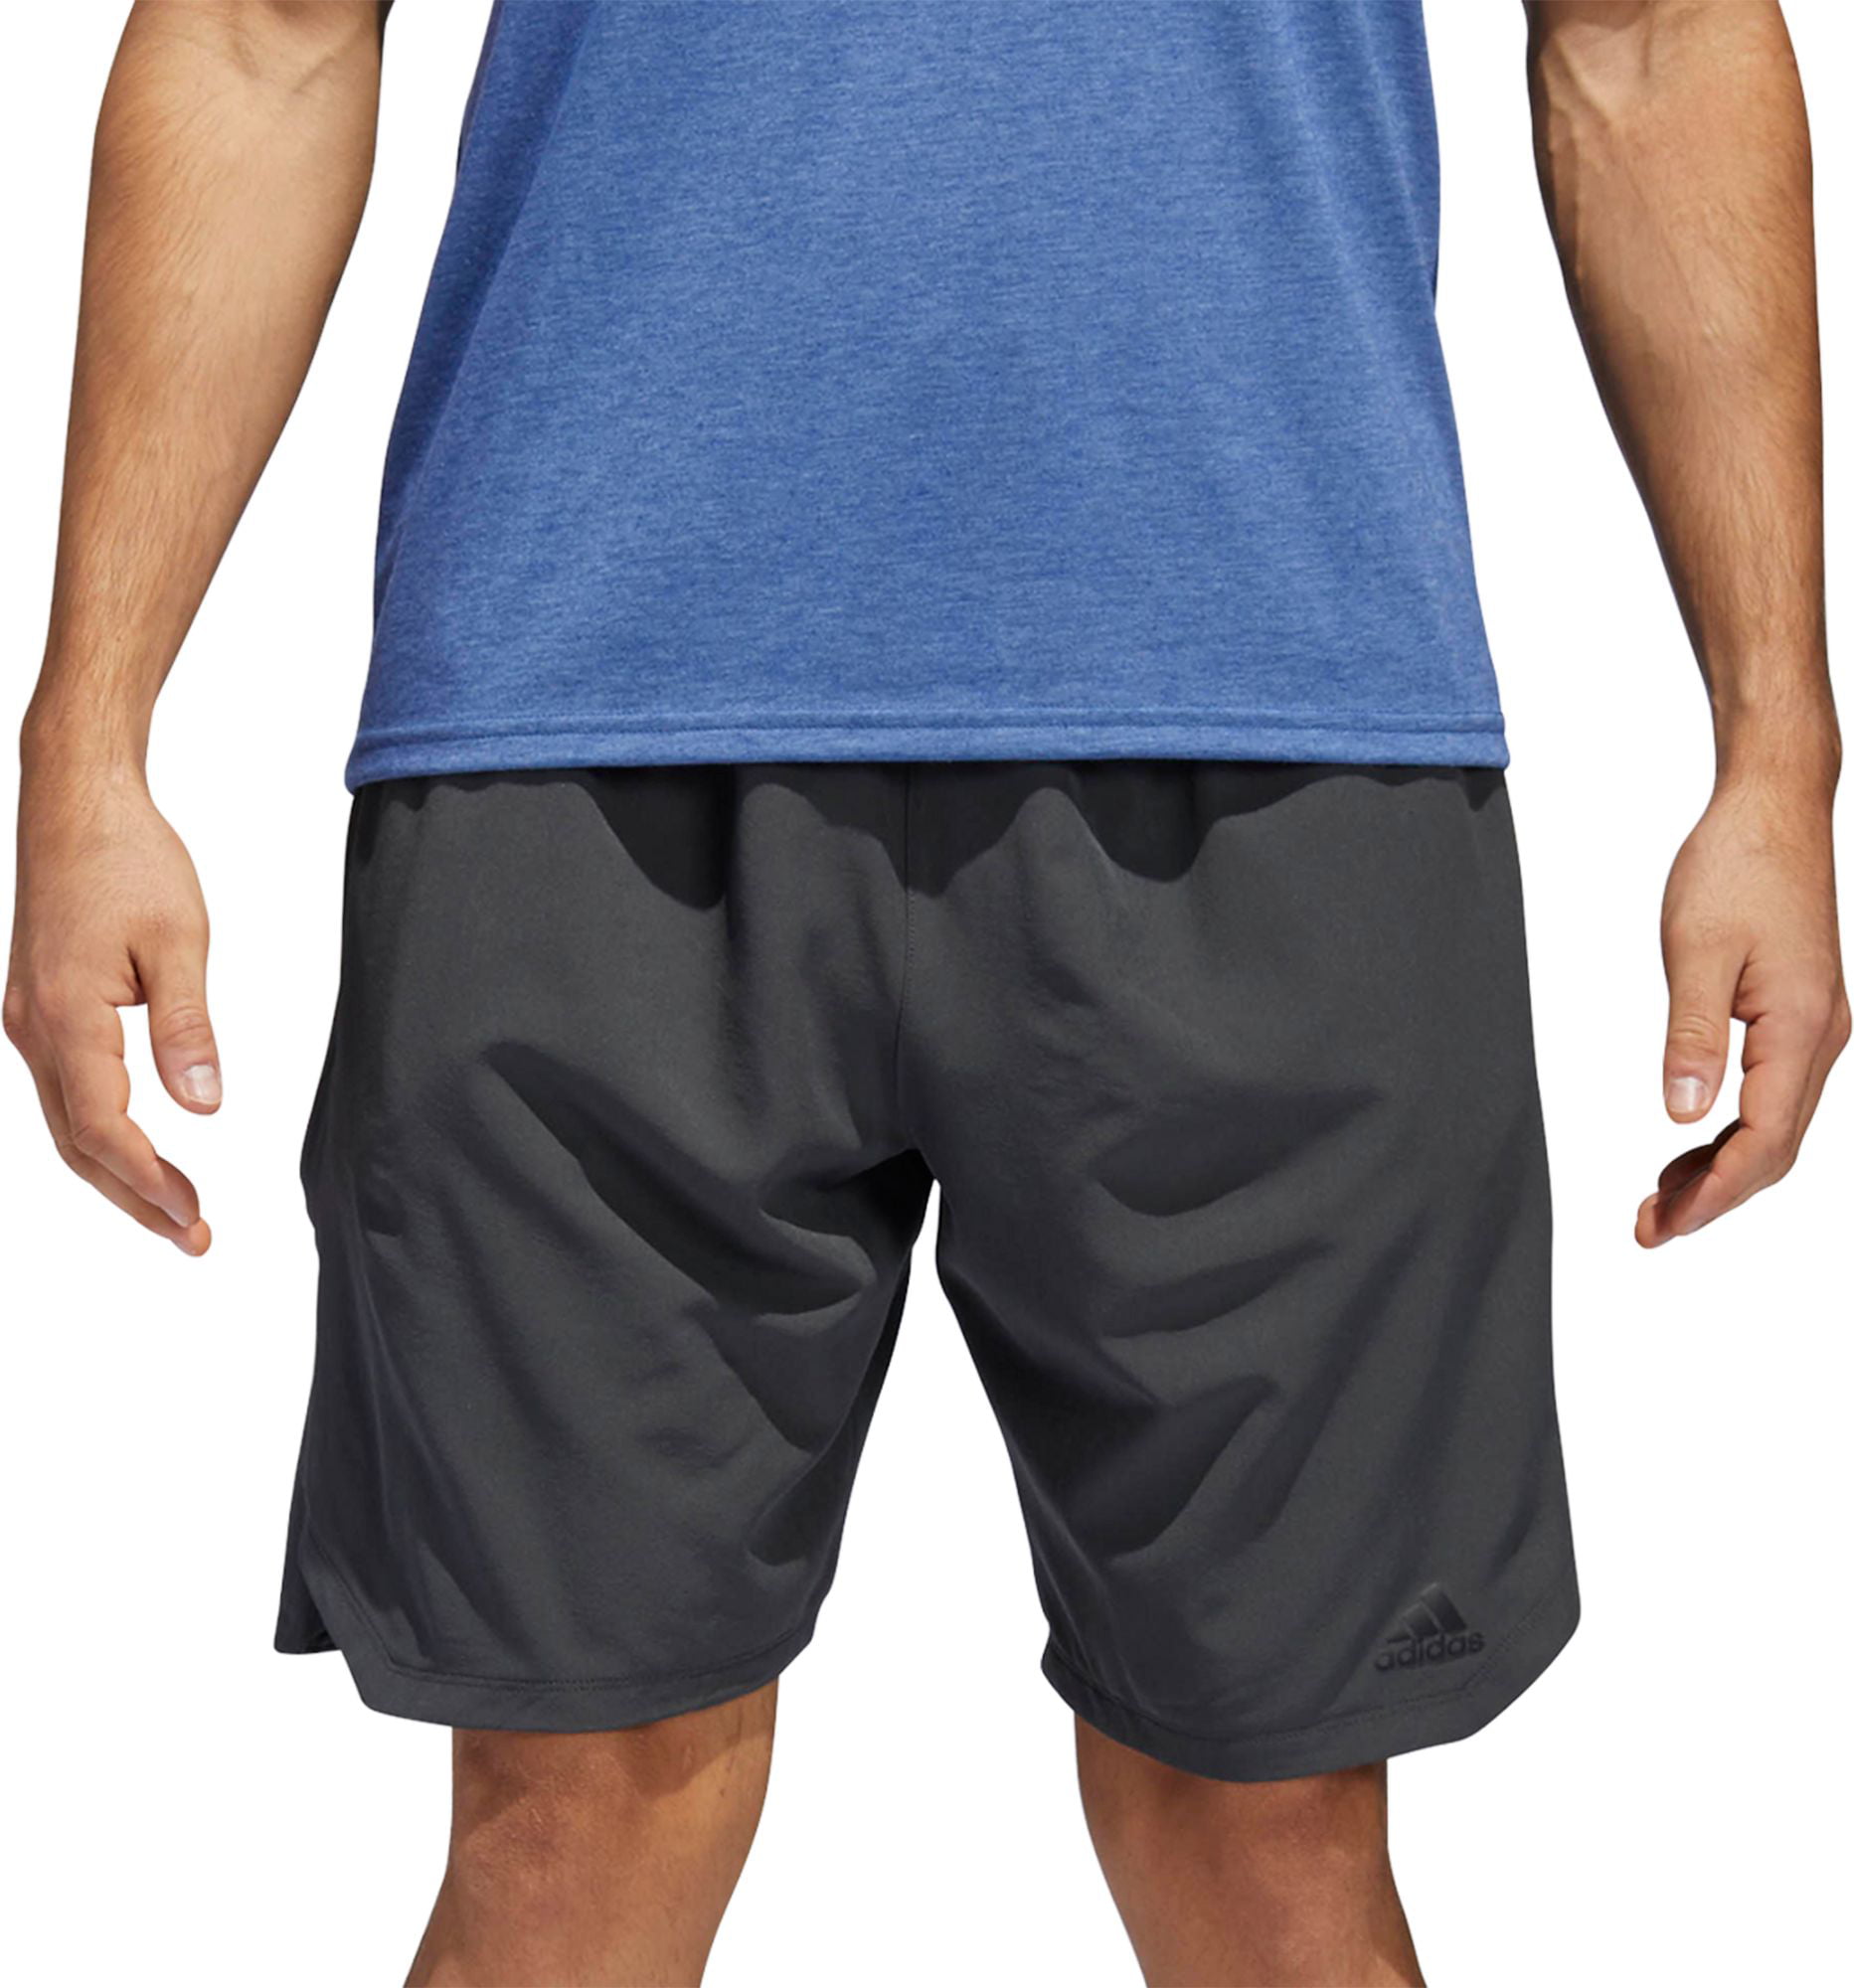 adidas men's axis shorts